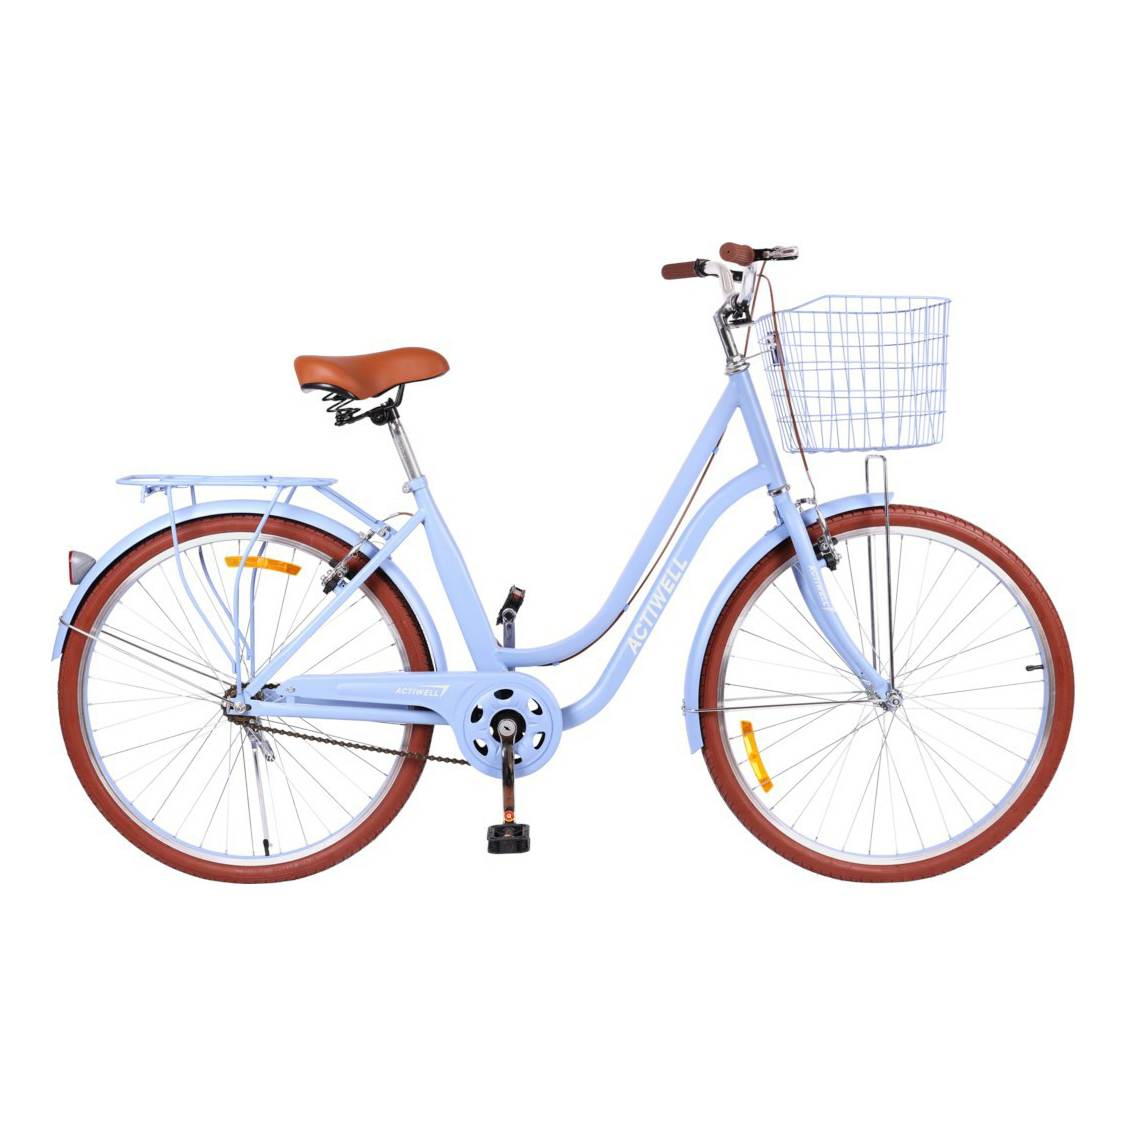 Велосипед городской Actiwell City вишневый